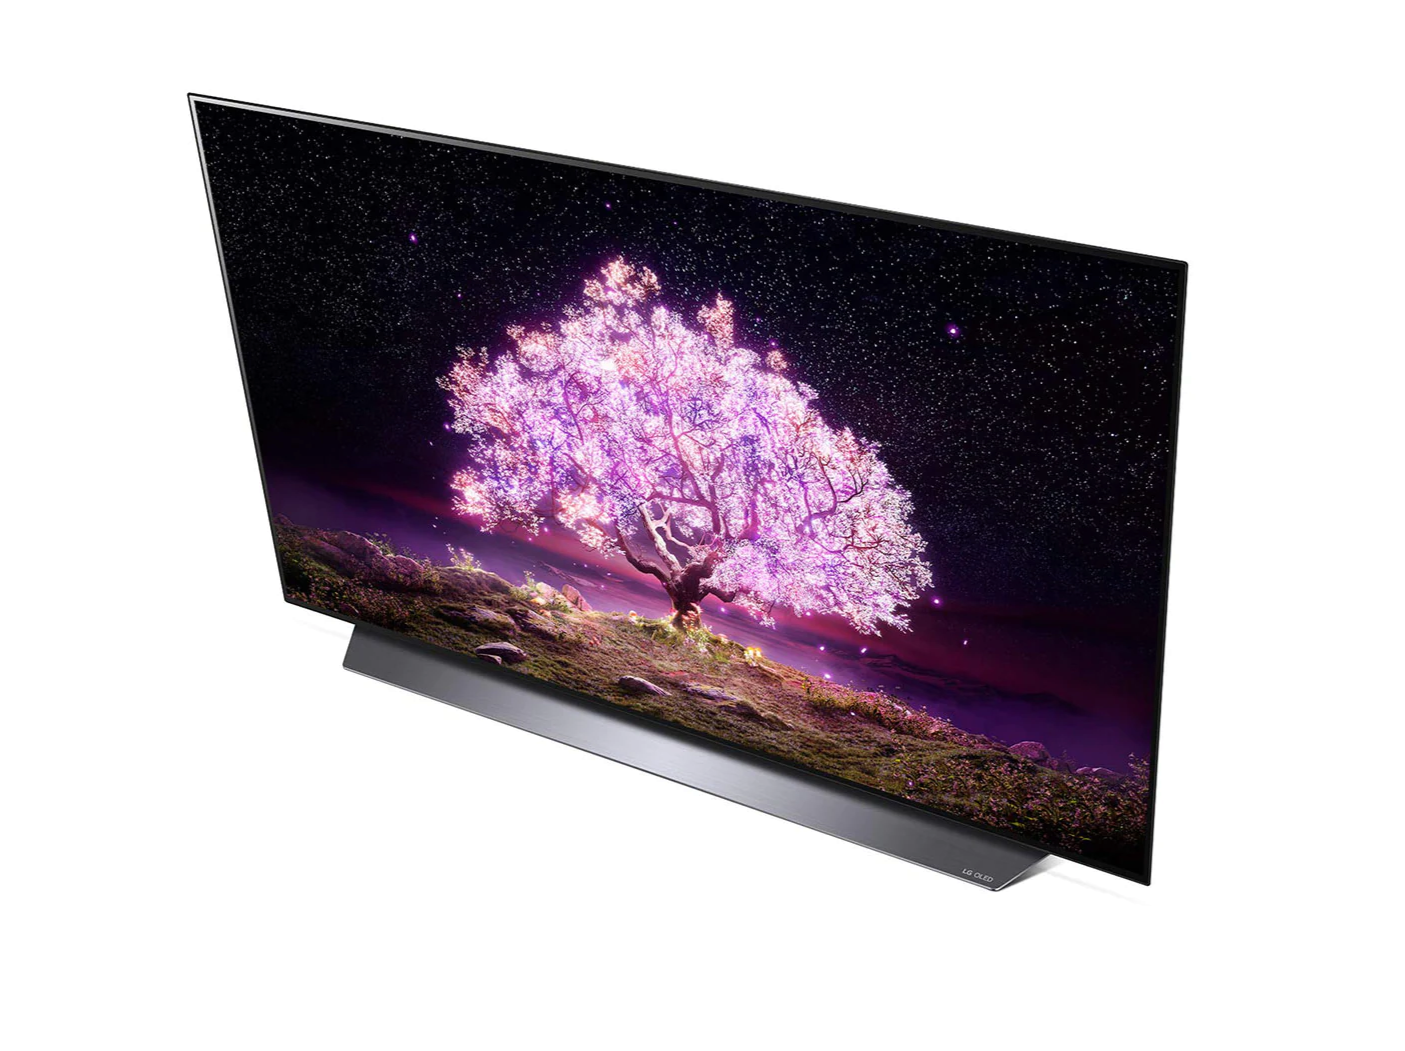 LG 48C1 OLED televízió fentről nézve talpon, a kijelzőn csillagos égbolt és rózsaszínben világító fa.